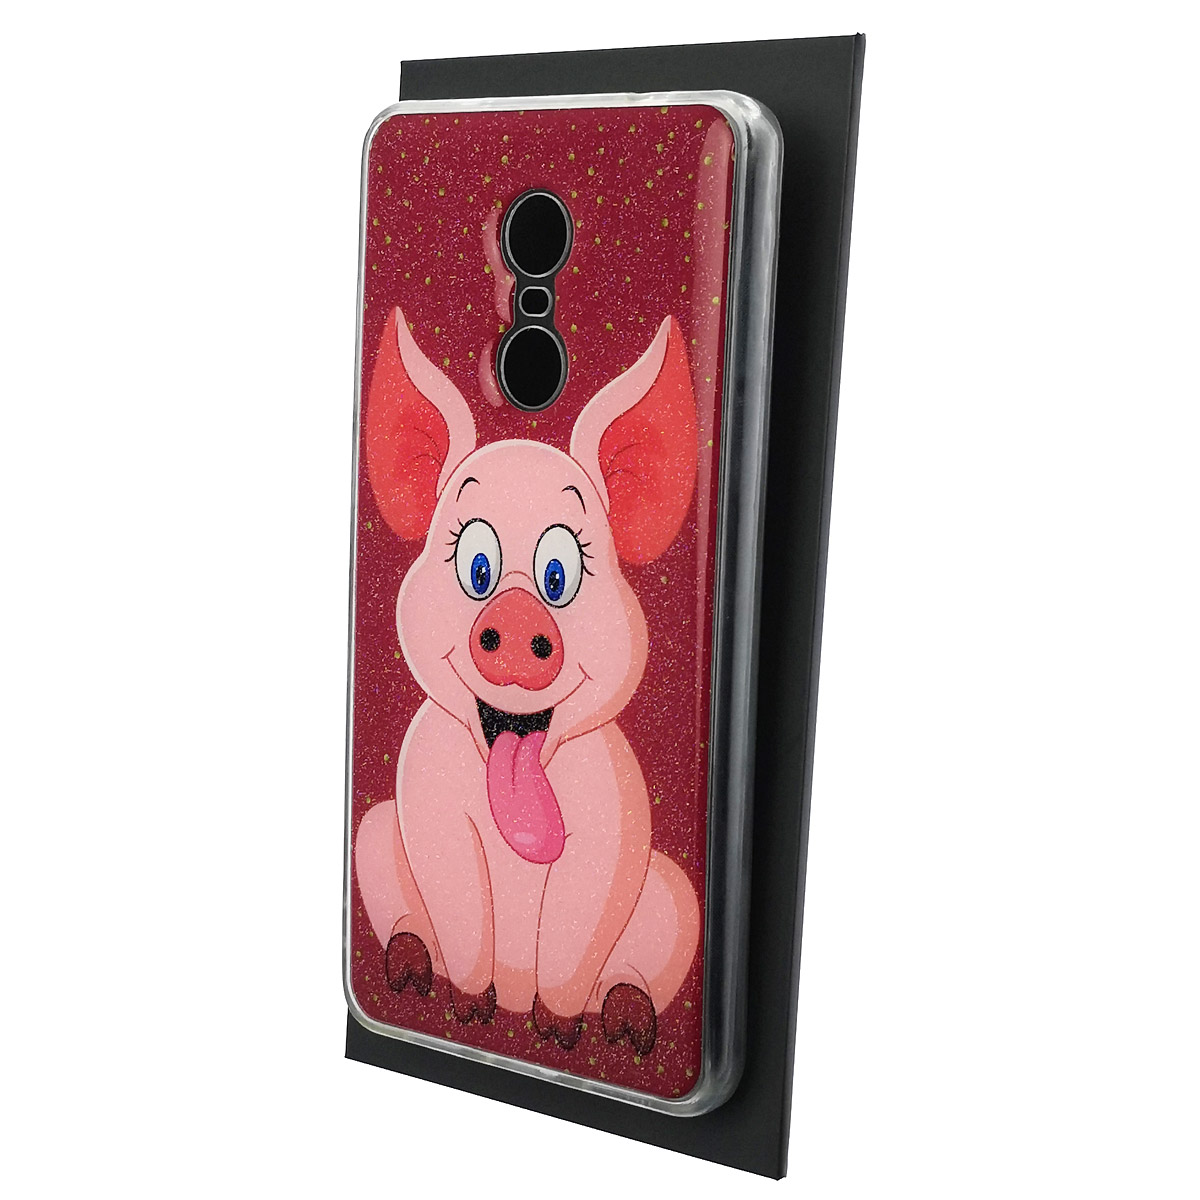 Чехол накладка для XIAOMI Redmi Note 4X, силикон, блестки, глянцевый, рисунок Розовый поросенок